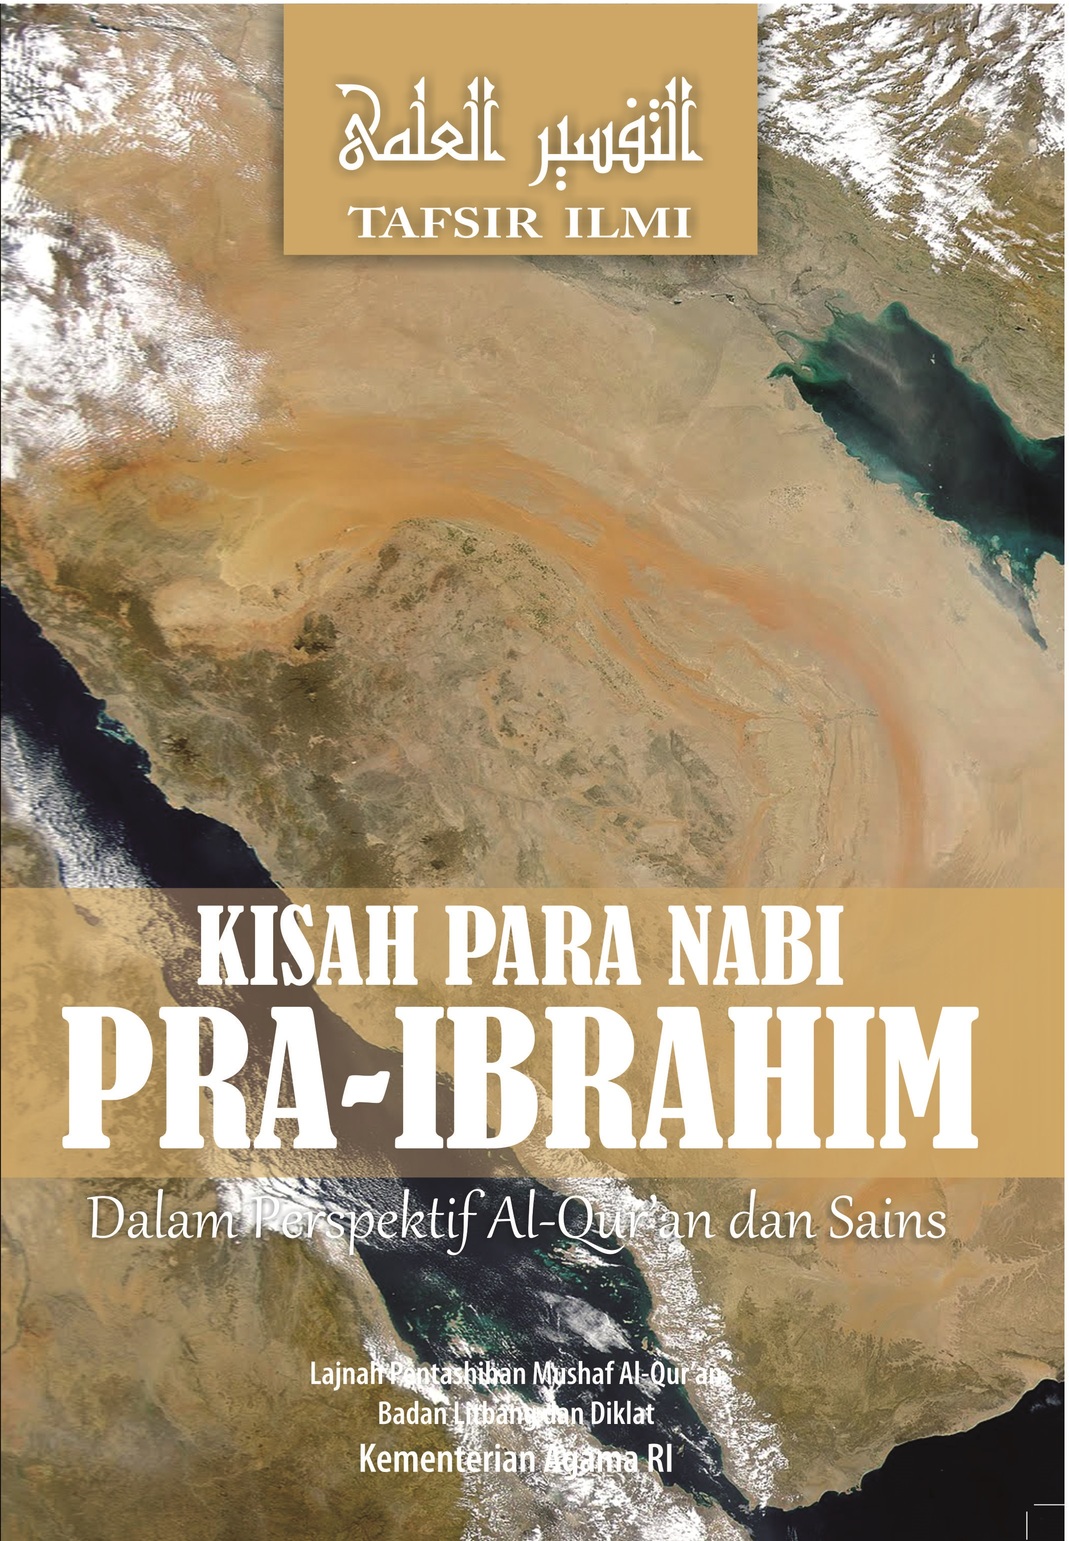 KISAH PARA NABI PRA-IBRAHIM